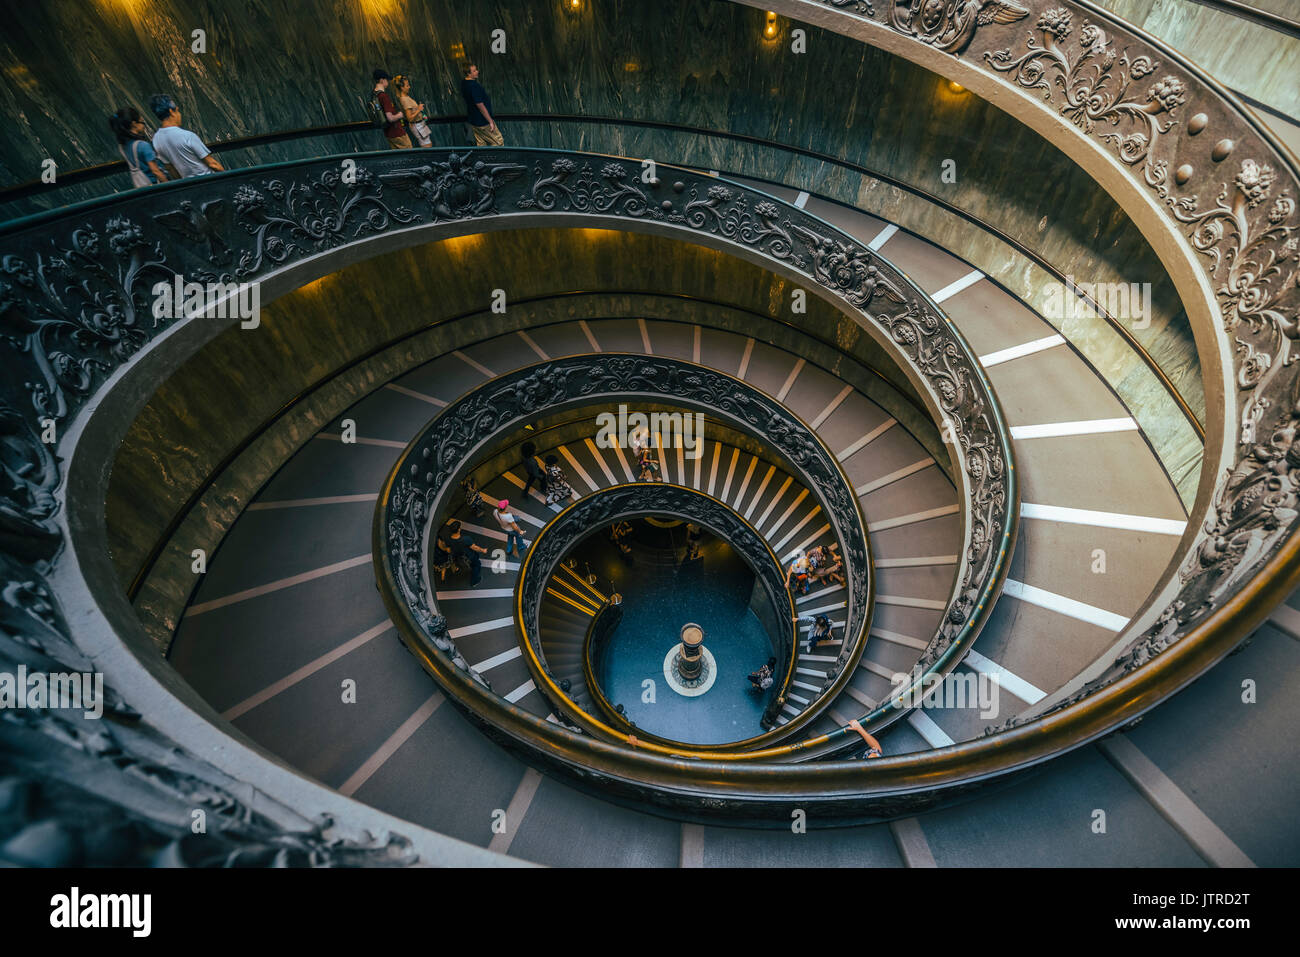 Mirando hacia abajo sobre la famosa doble hélice Bramante escalera de salida en los Museos Vaticanos, Roma, Italia Foto de stock